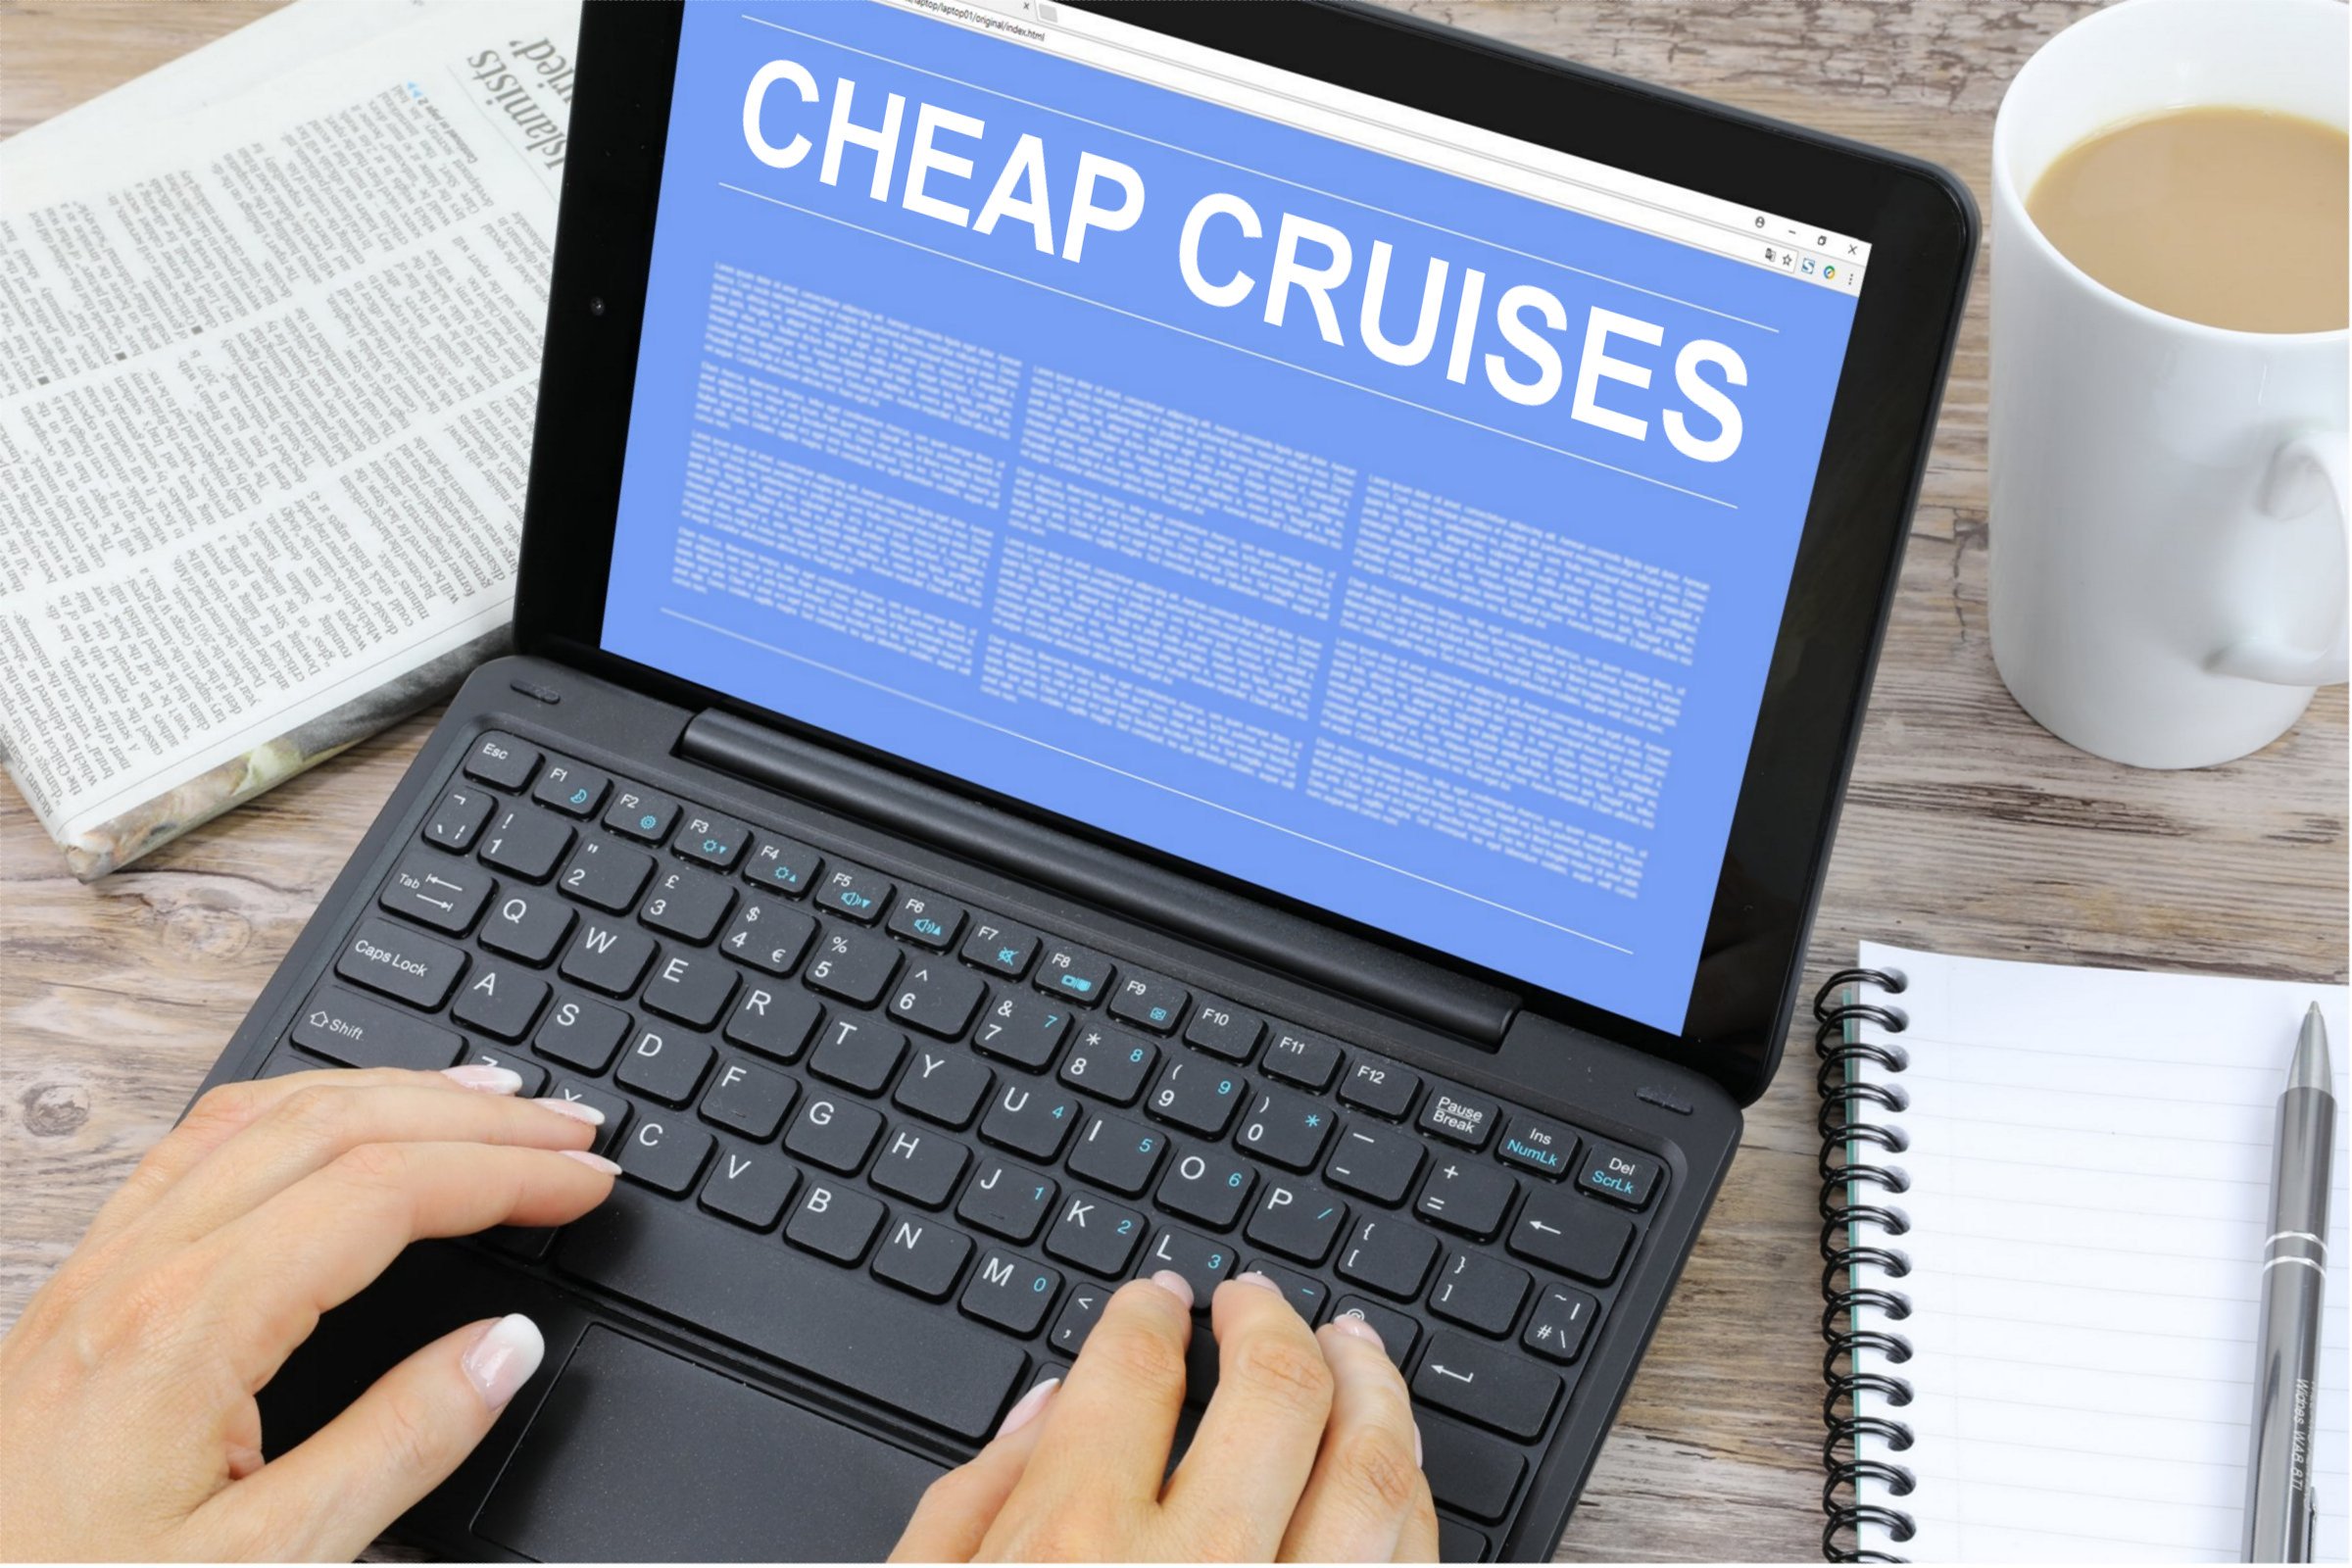 Cheap Cruises